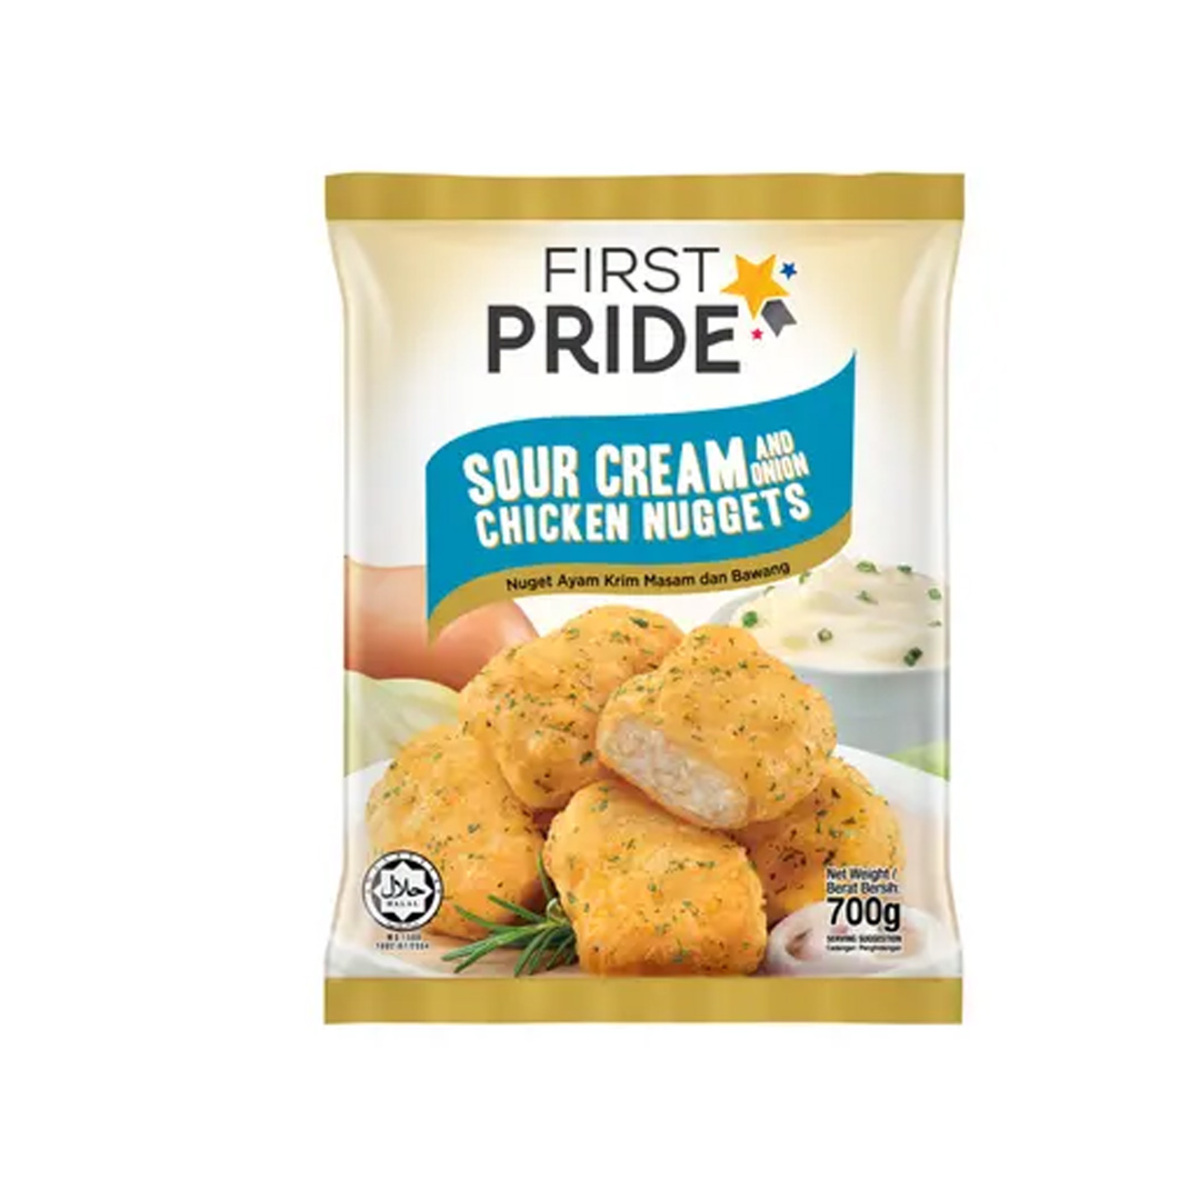 First Pride Sour Cream & Onion Chicken Nuggets 700g